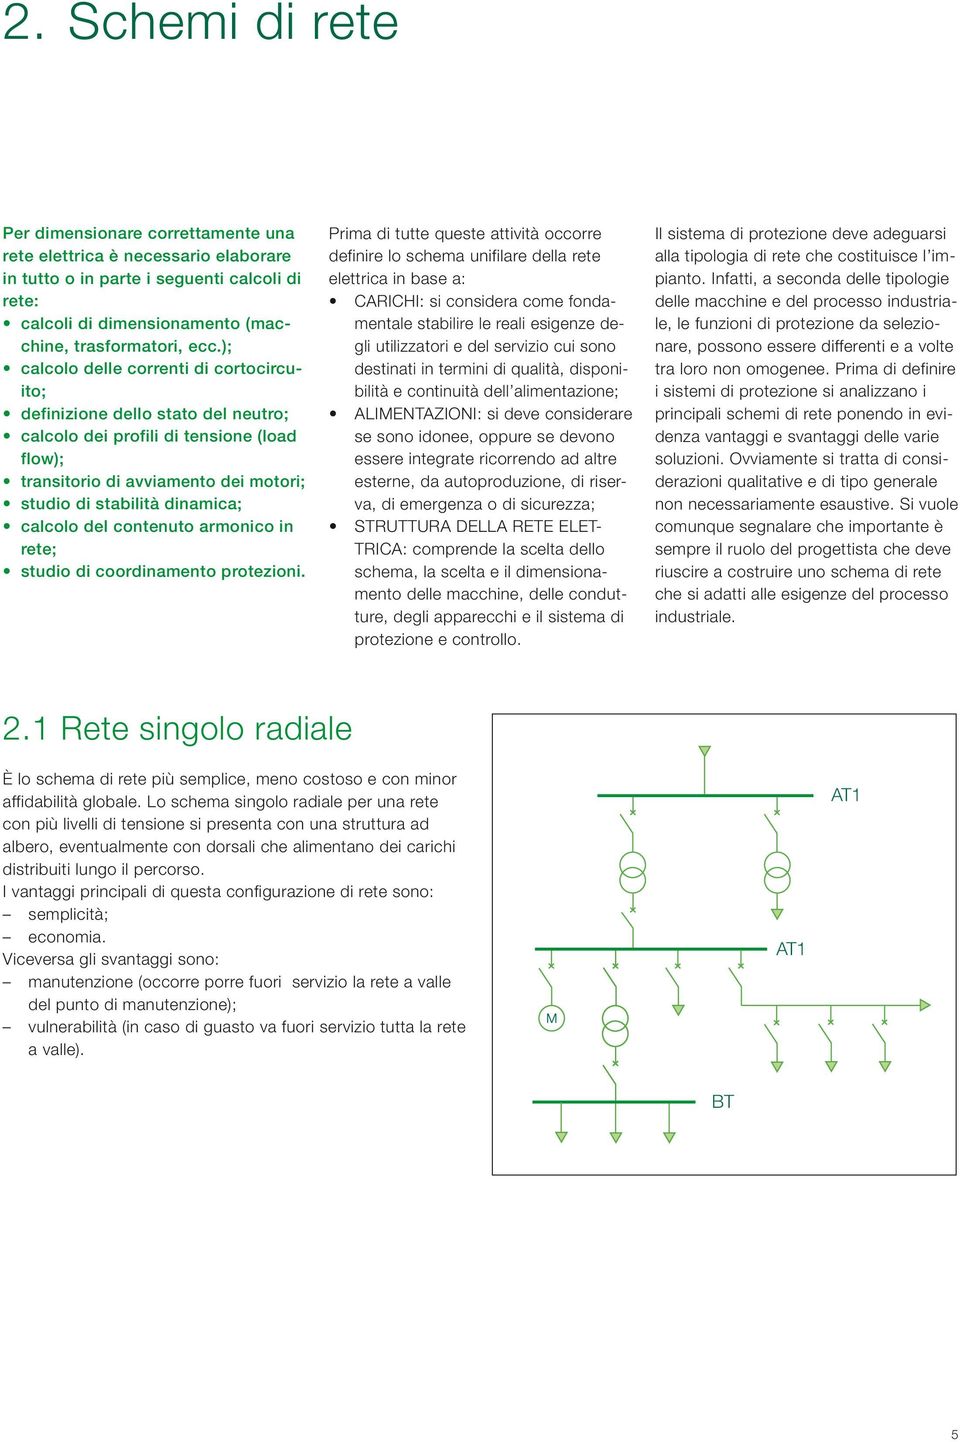 calcolo del contenuto armonico in rete; studio di coordinamento protezioni.